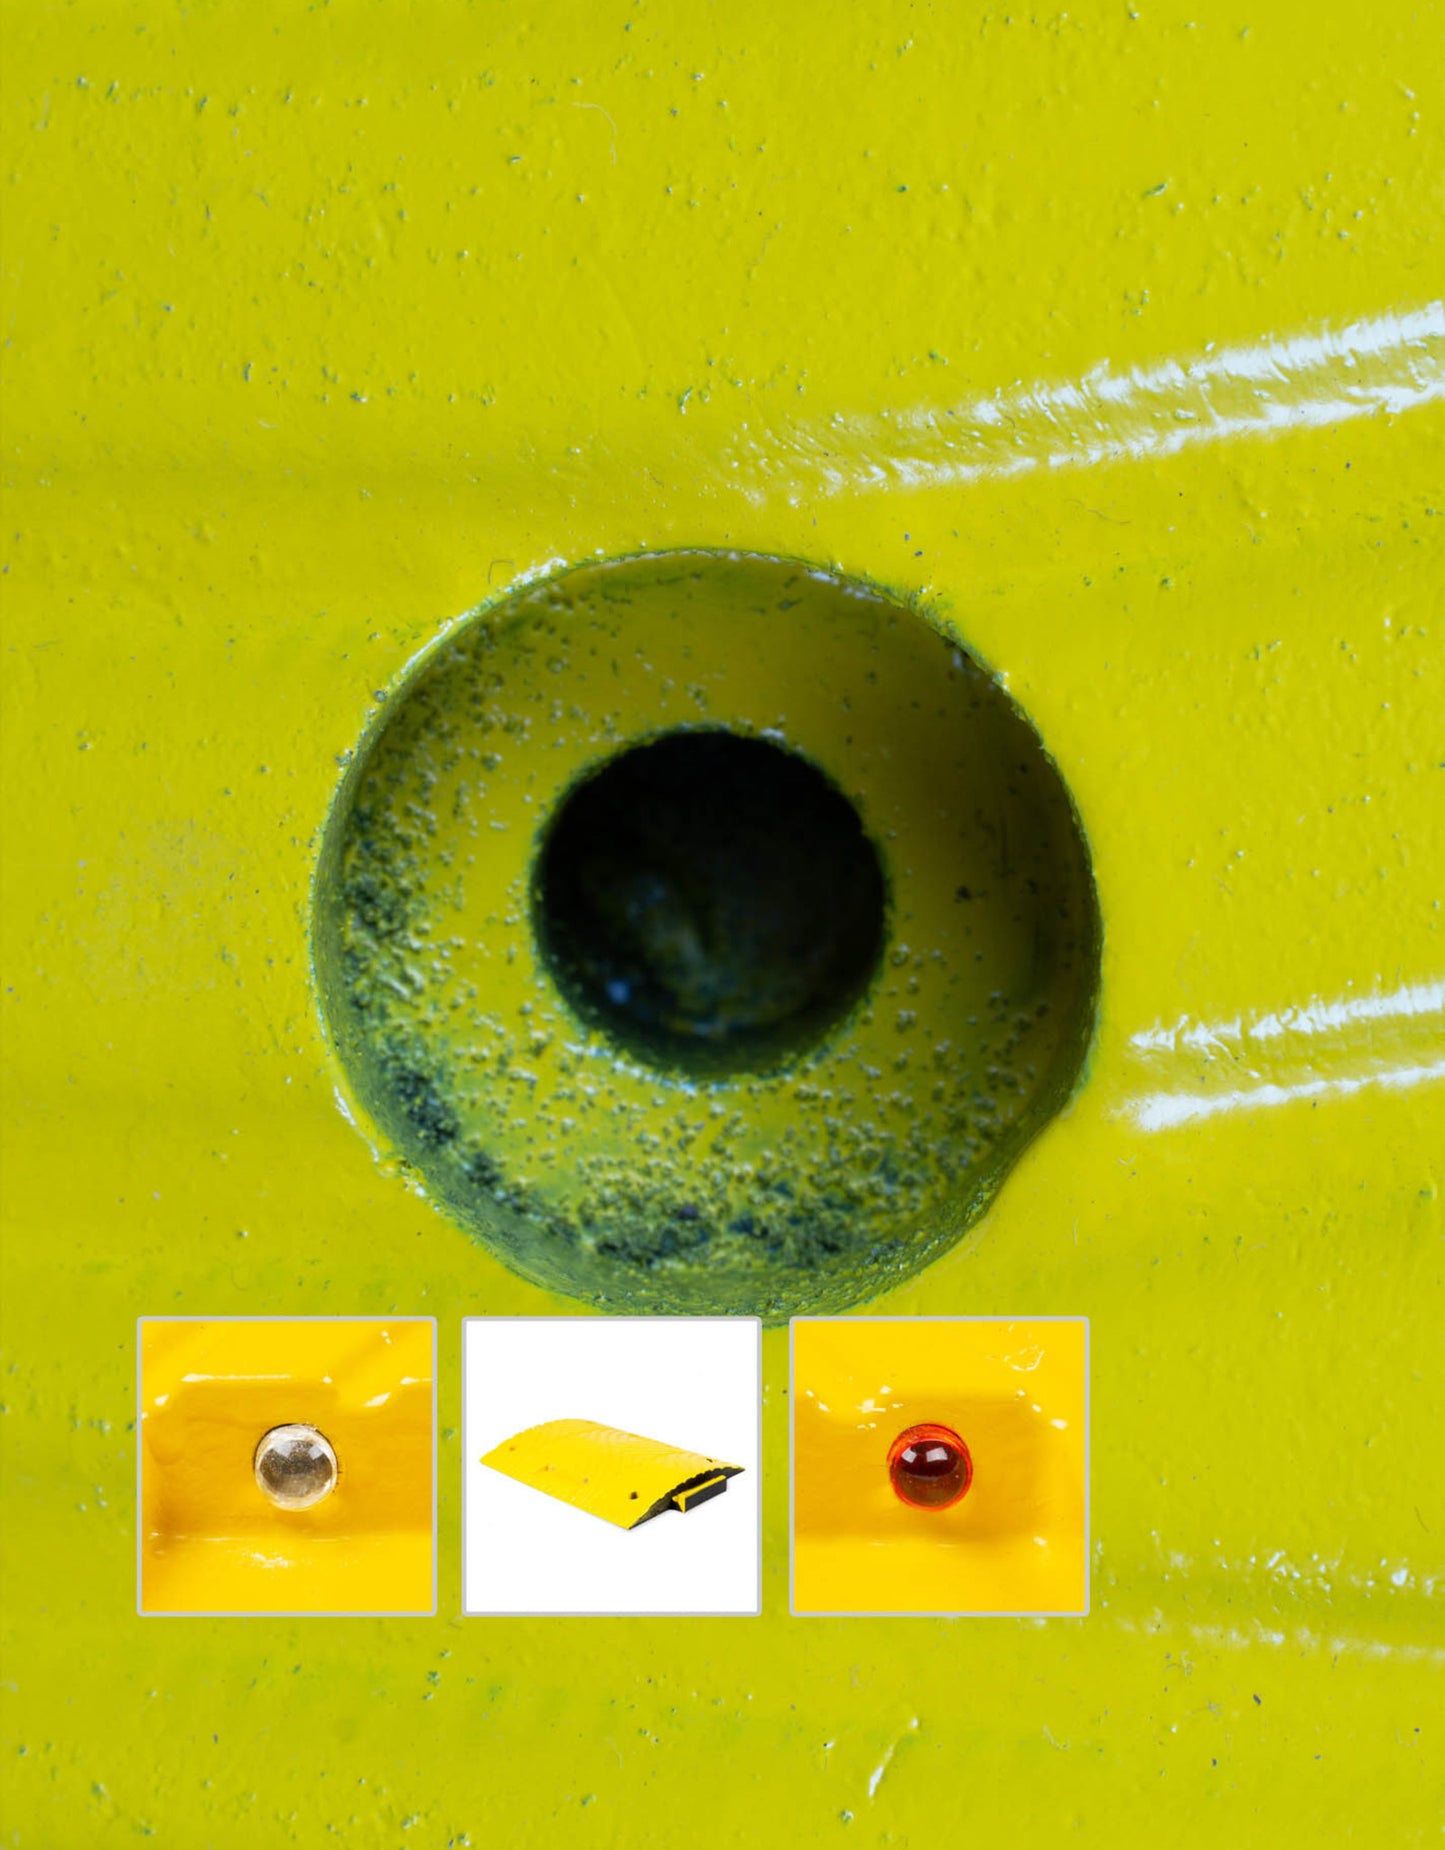 Module extrémite de ralentisseur jaune - H 70 mm